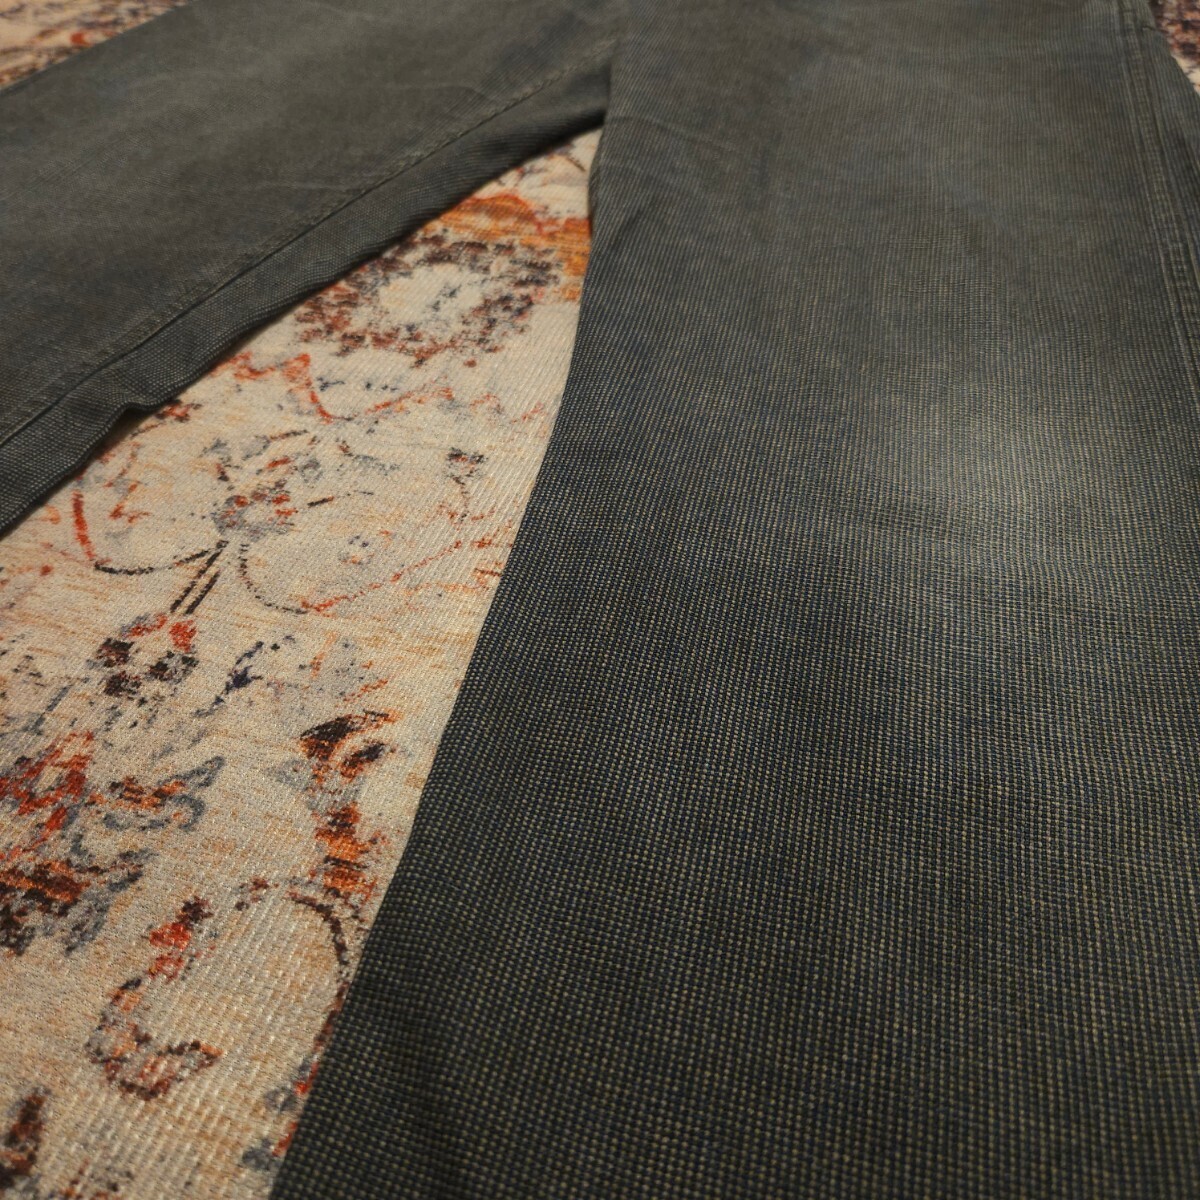 【逸品】 RRL Black Gray Carpenter Trousers 【32×30】 ブラックグレー カーペンター トラウザー 剣道着 黒 Ralph Lauren 月桂樹 パンツの画像5